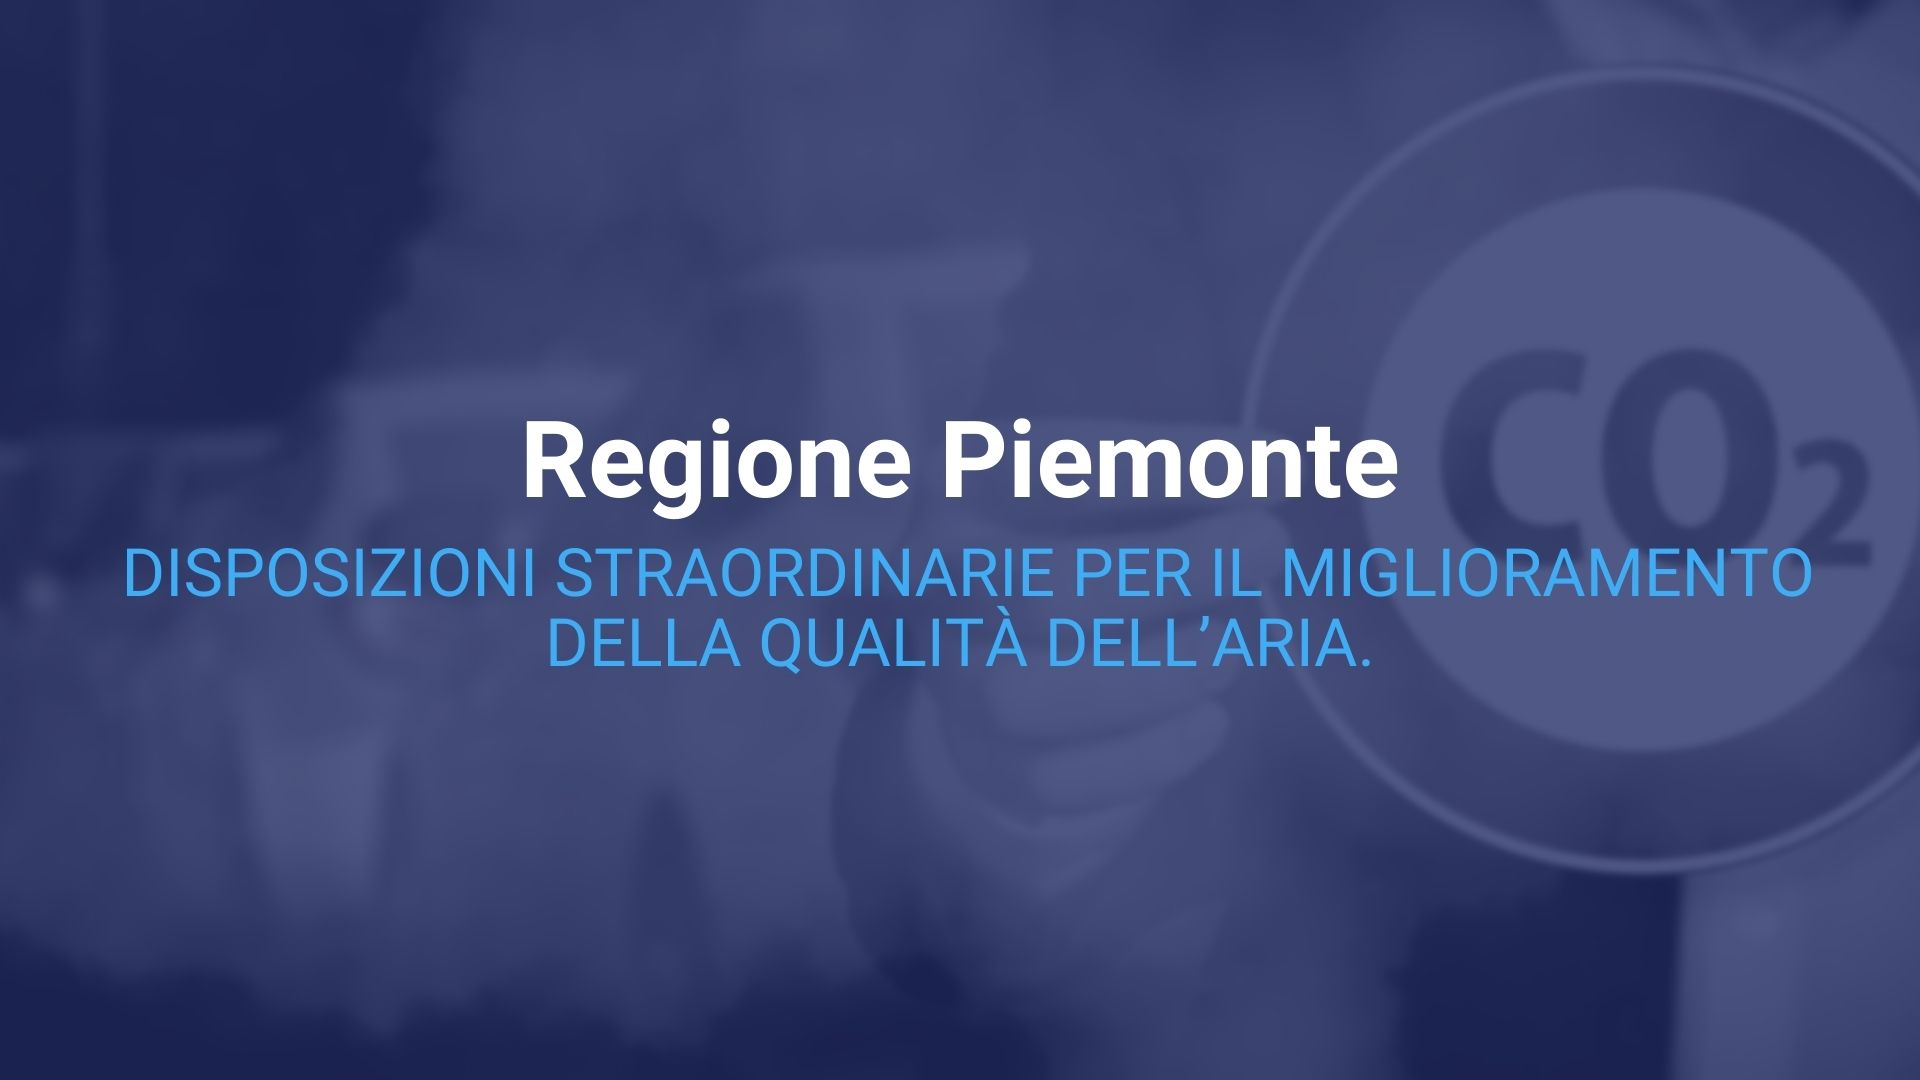 Regione Piemonte. Disposizioni straordinarie per il miglioramento della qualita aria